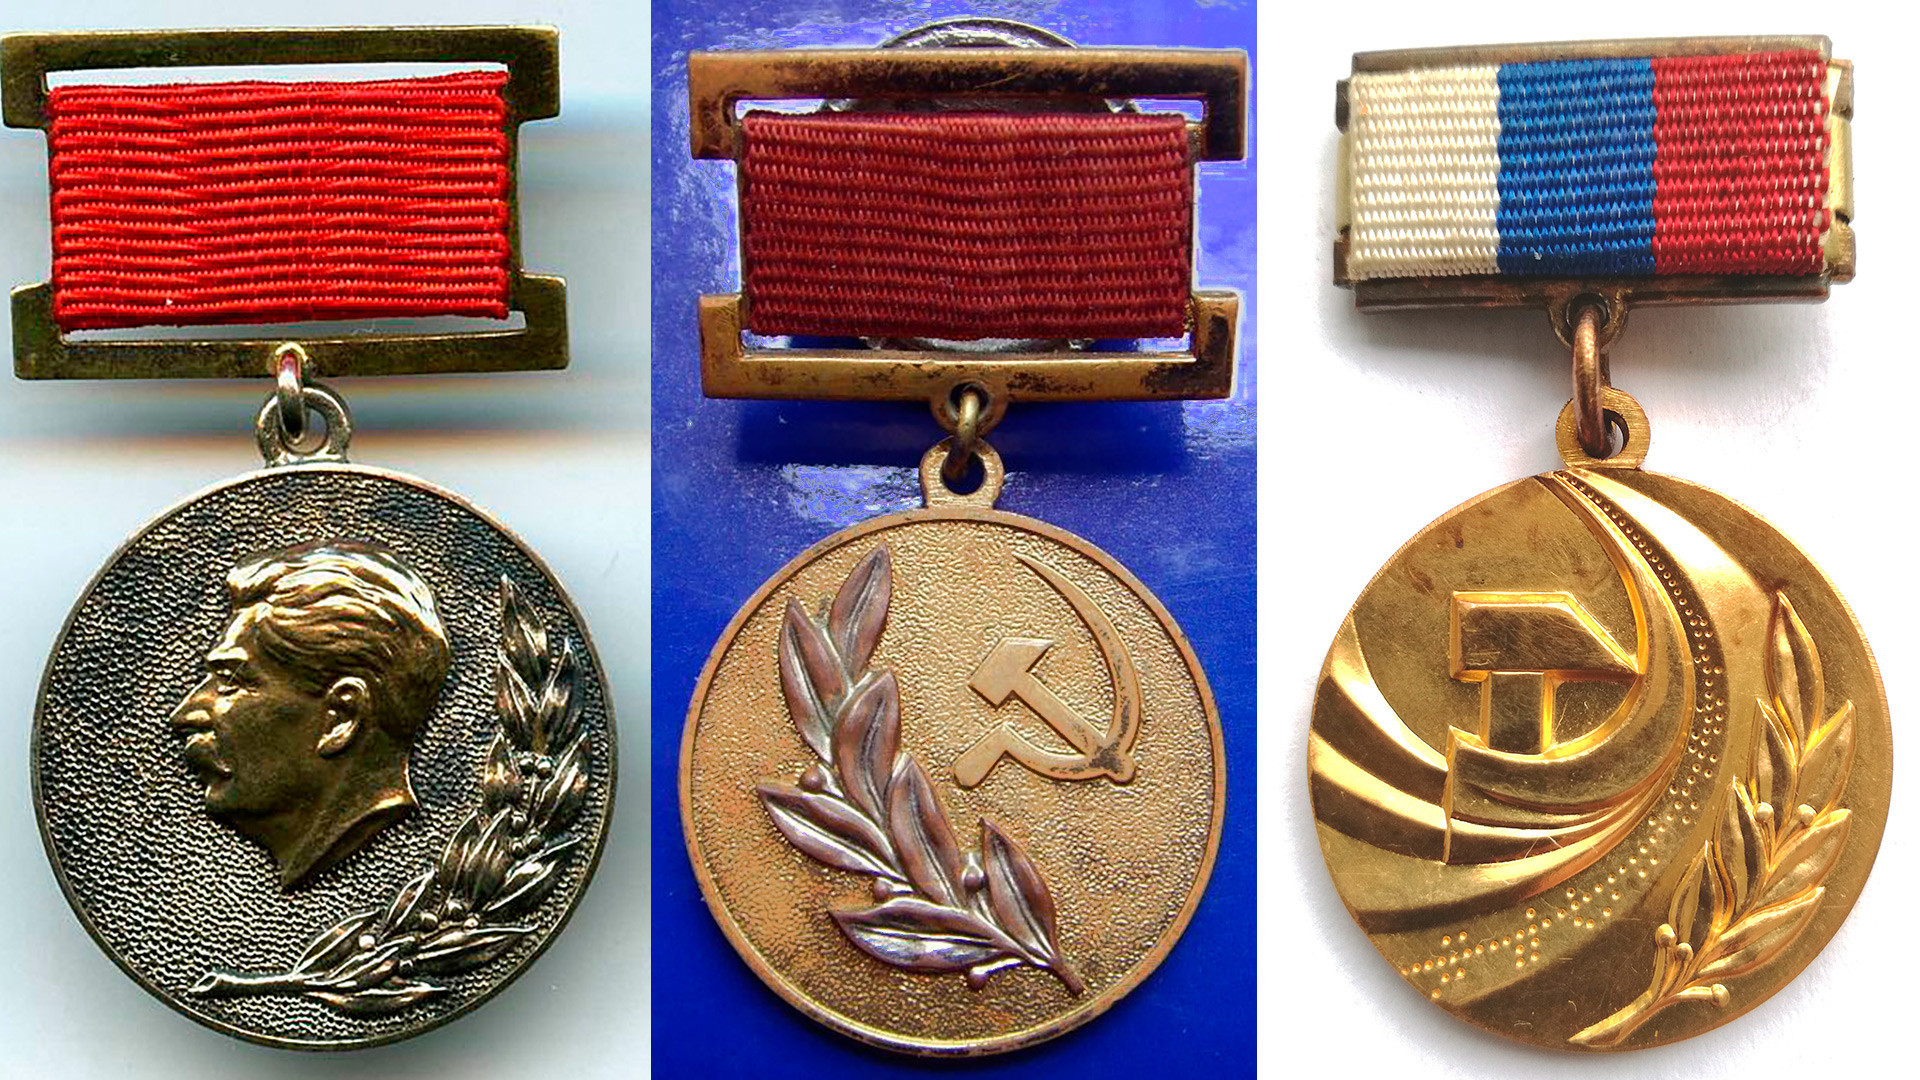 Medali Penghargaan Negara dari Uni Soviet era Stalin hingga Rusia modern.